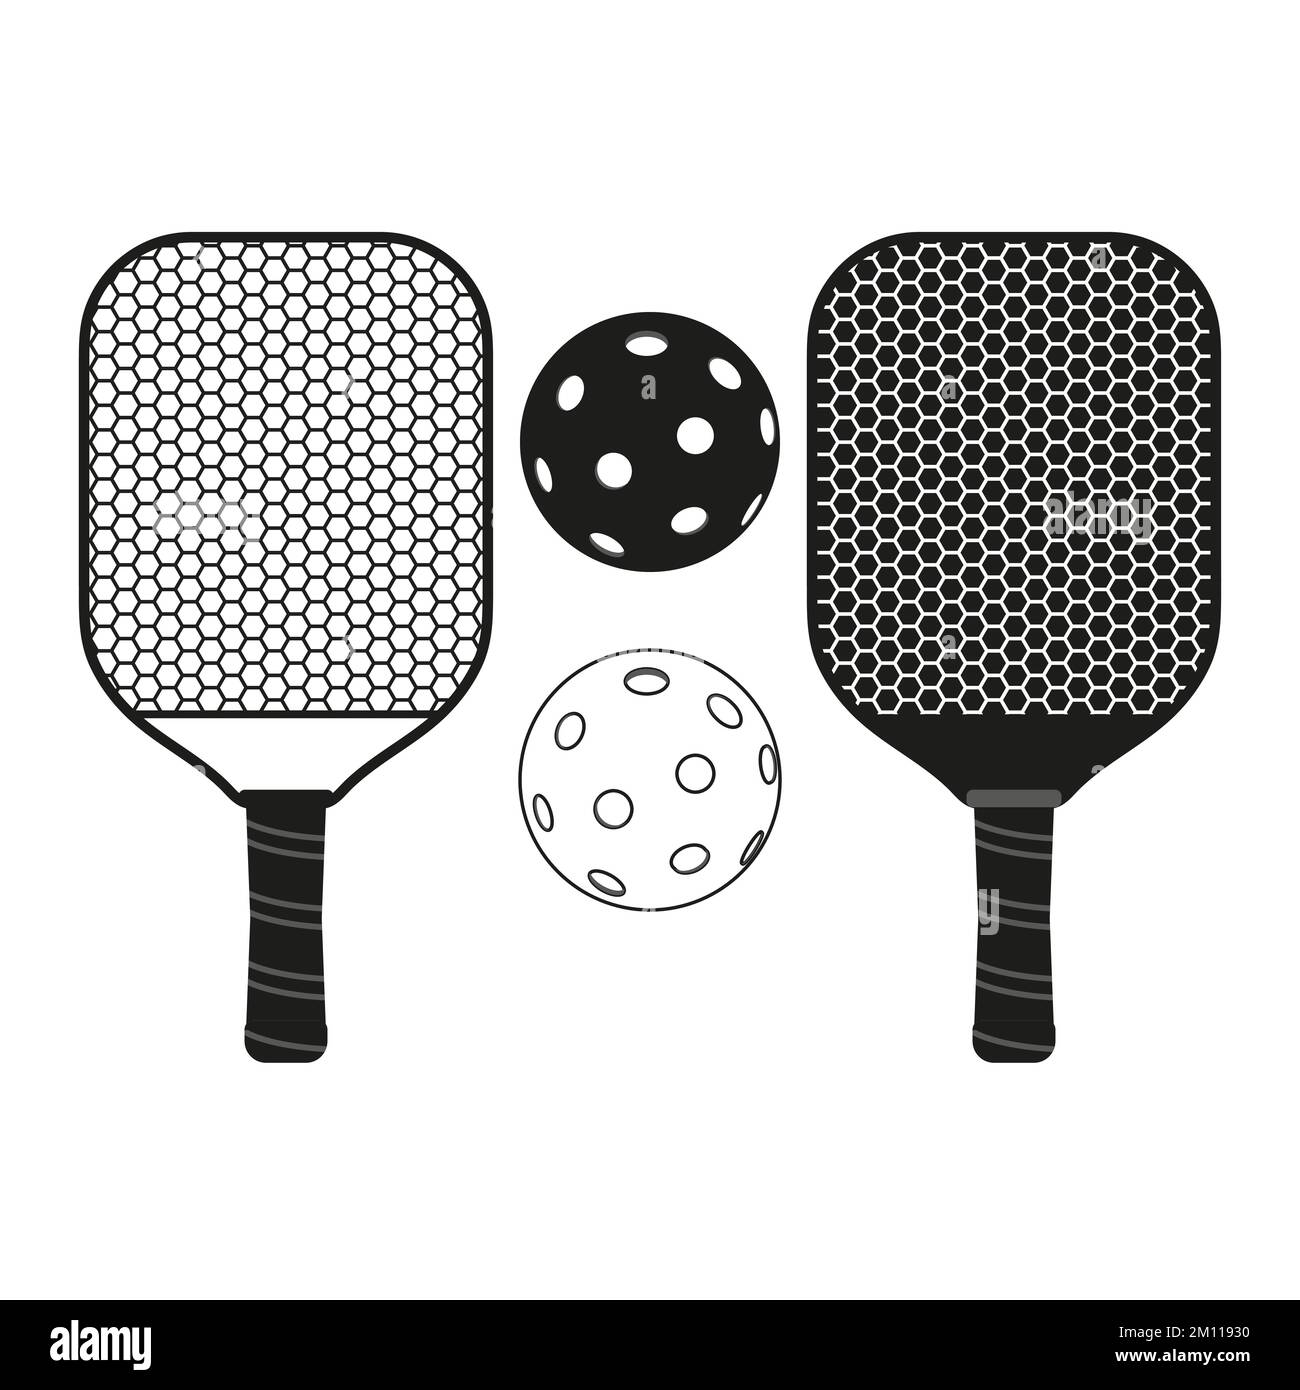 Illustrazione vettoriale Pinckle ball con paddle e testo. Illustrazione per la creazione di logo o per il design di magliette. Illustrazione vintage in bianco e nero Illustrazione Vettoriale